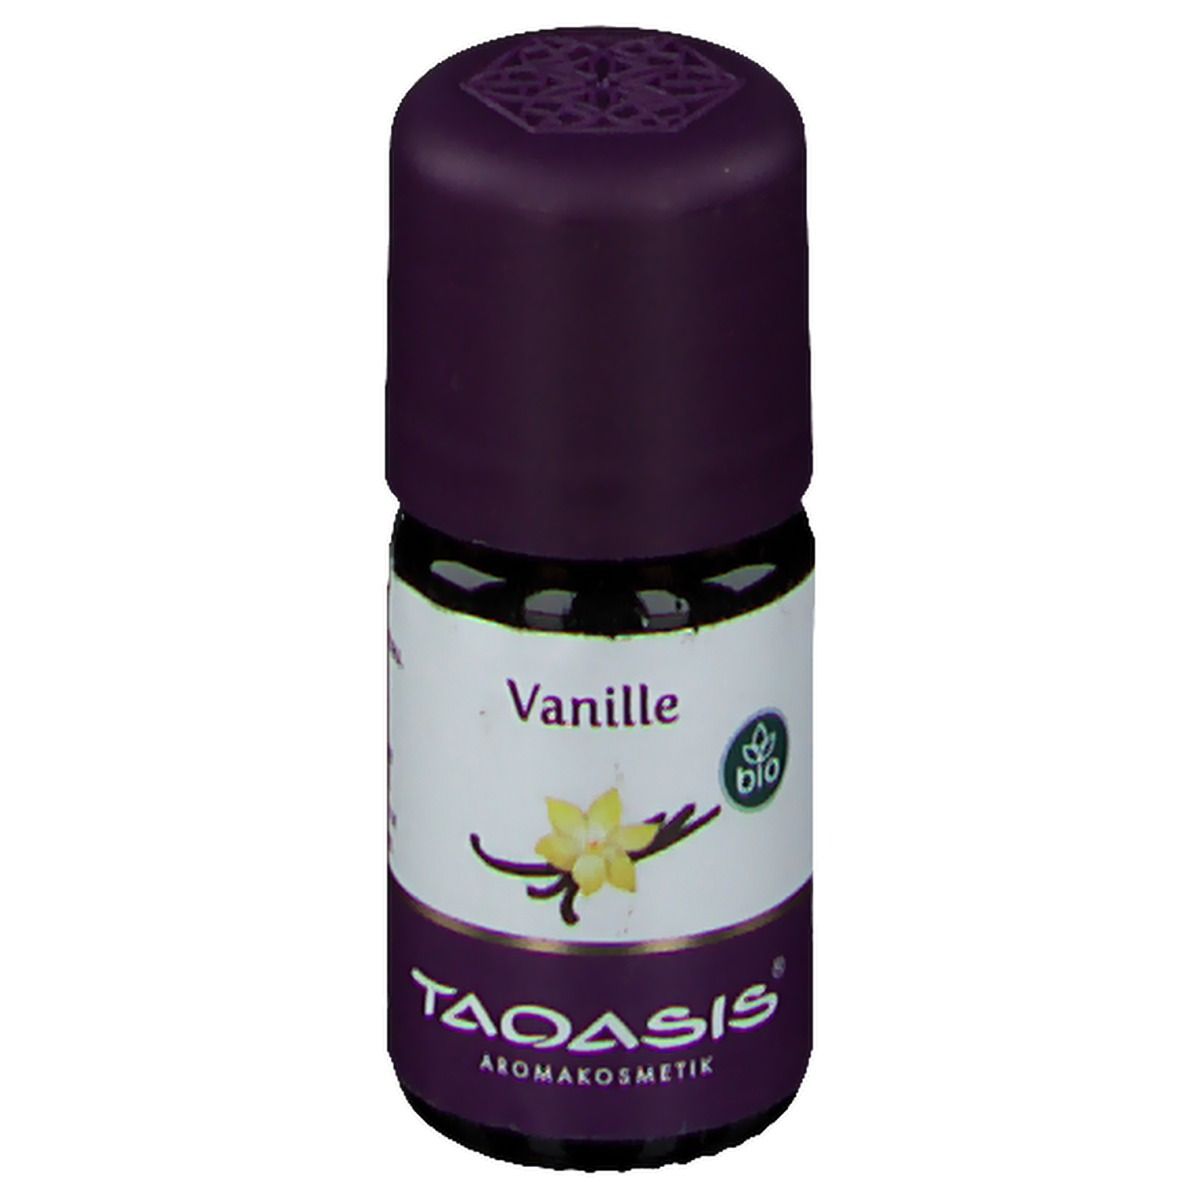 TAOASIS ® Vanille Extrakt Öl Bio